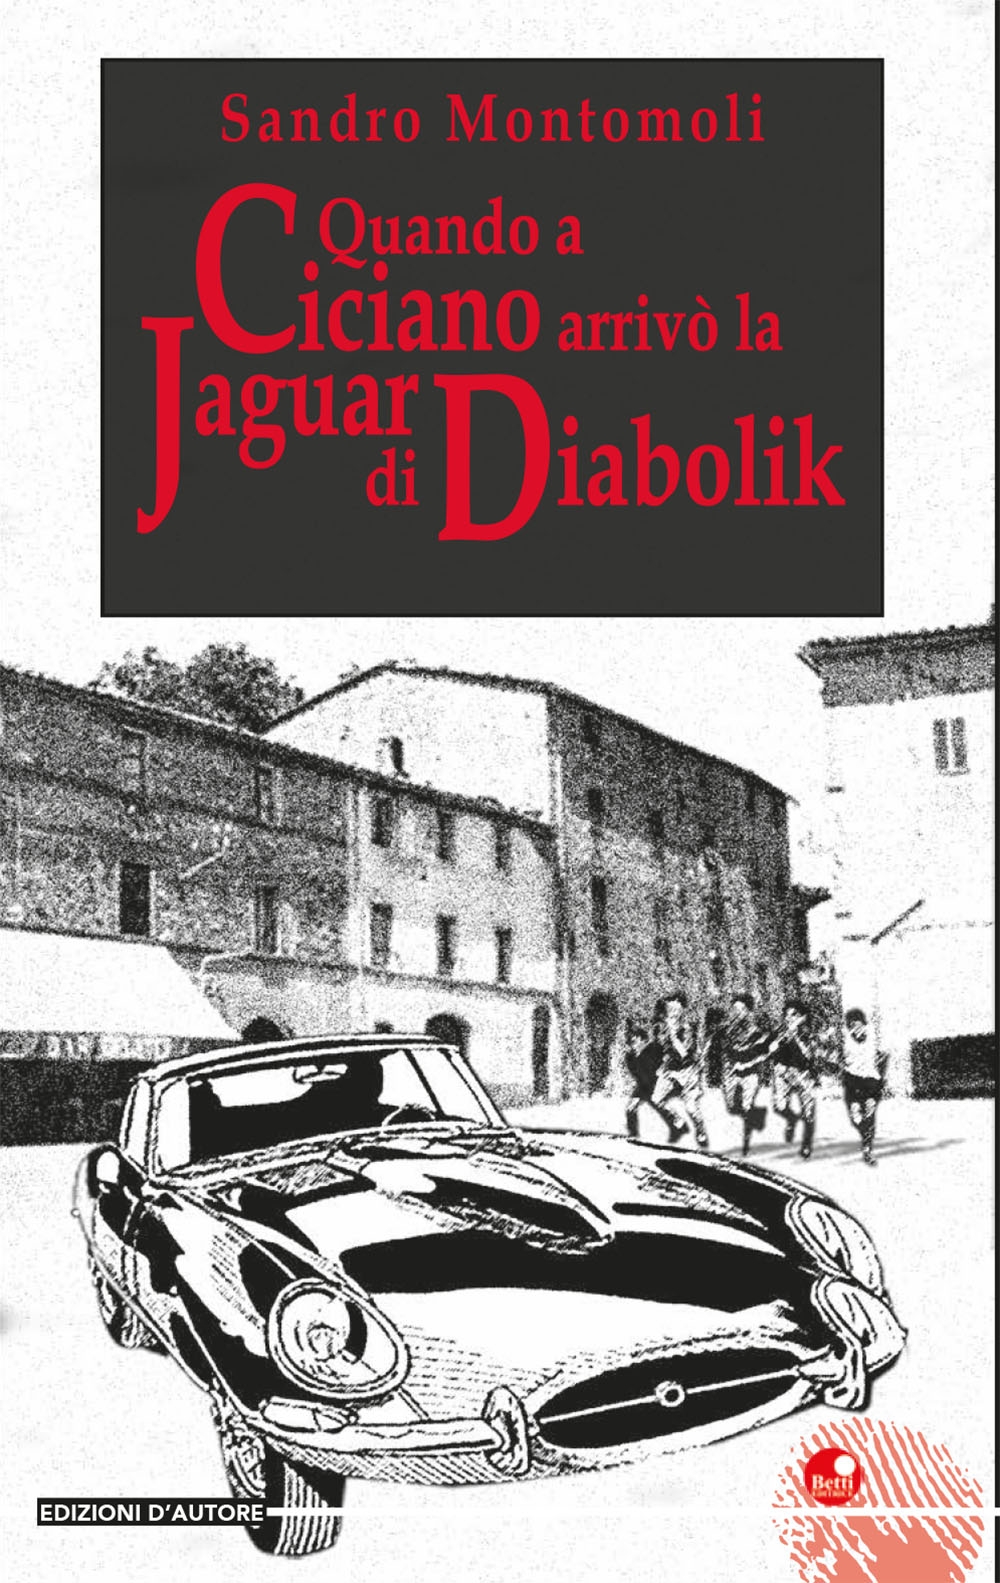 Quando a Ciciano arrivò la Jaguar di Diabolik